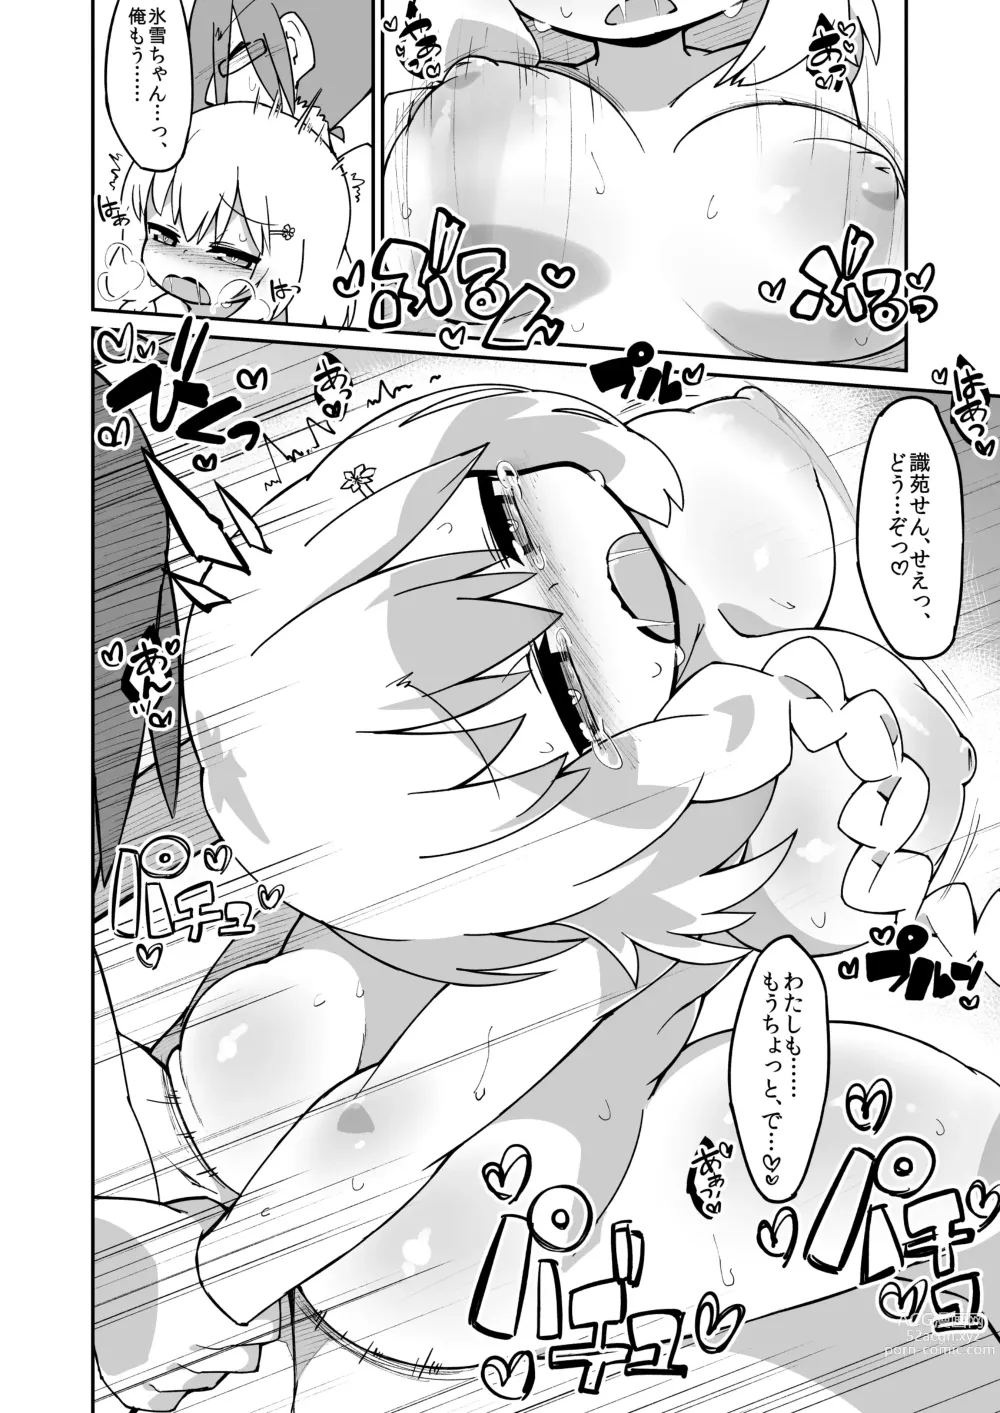 Page 4 of doujinshi Hiyuki-chan Ecchi Manga